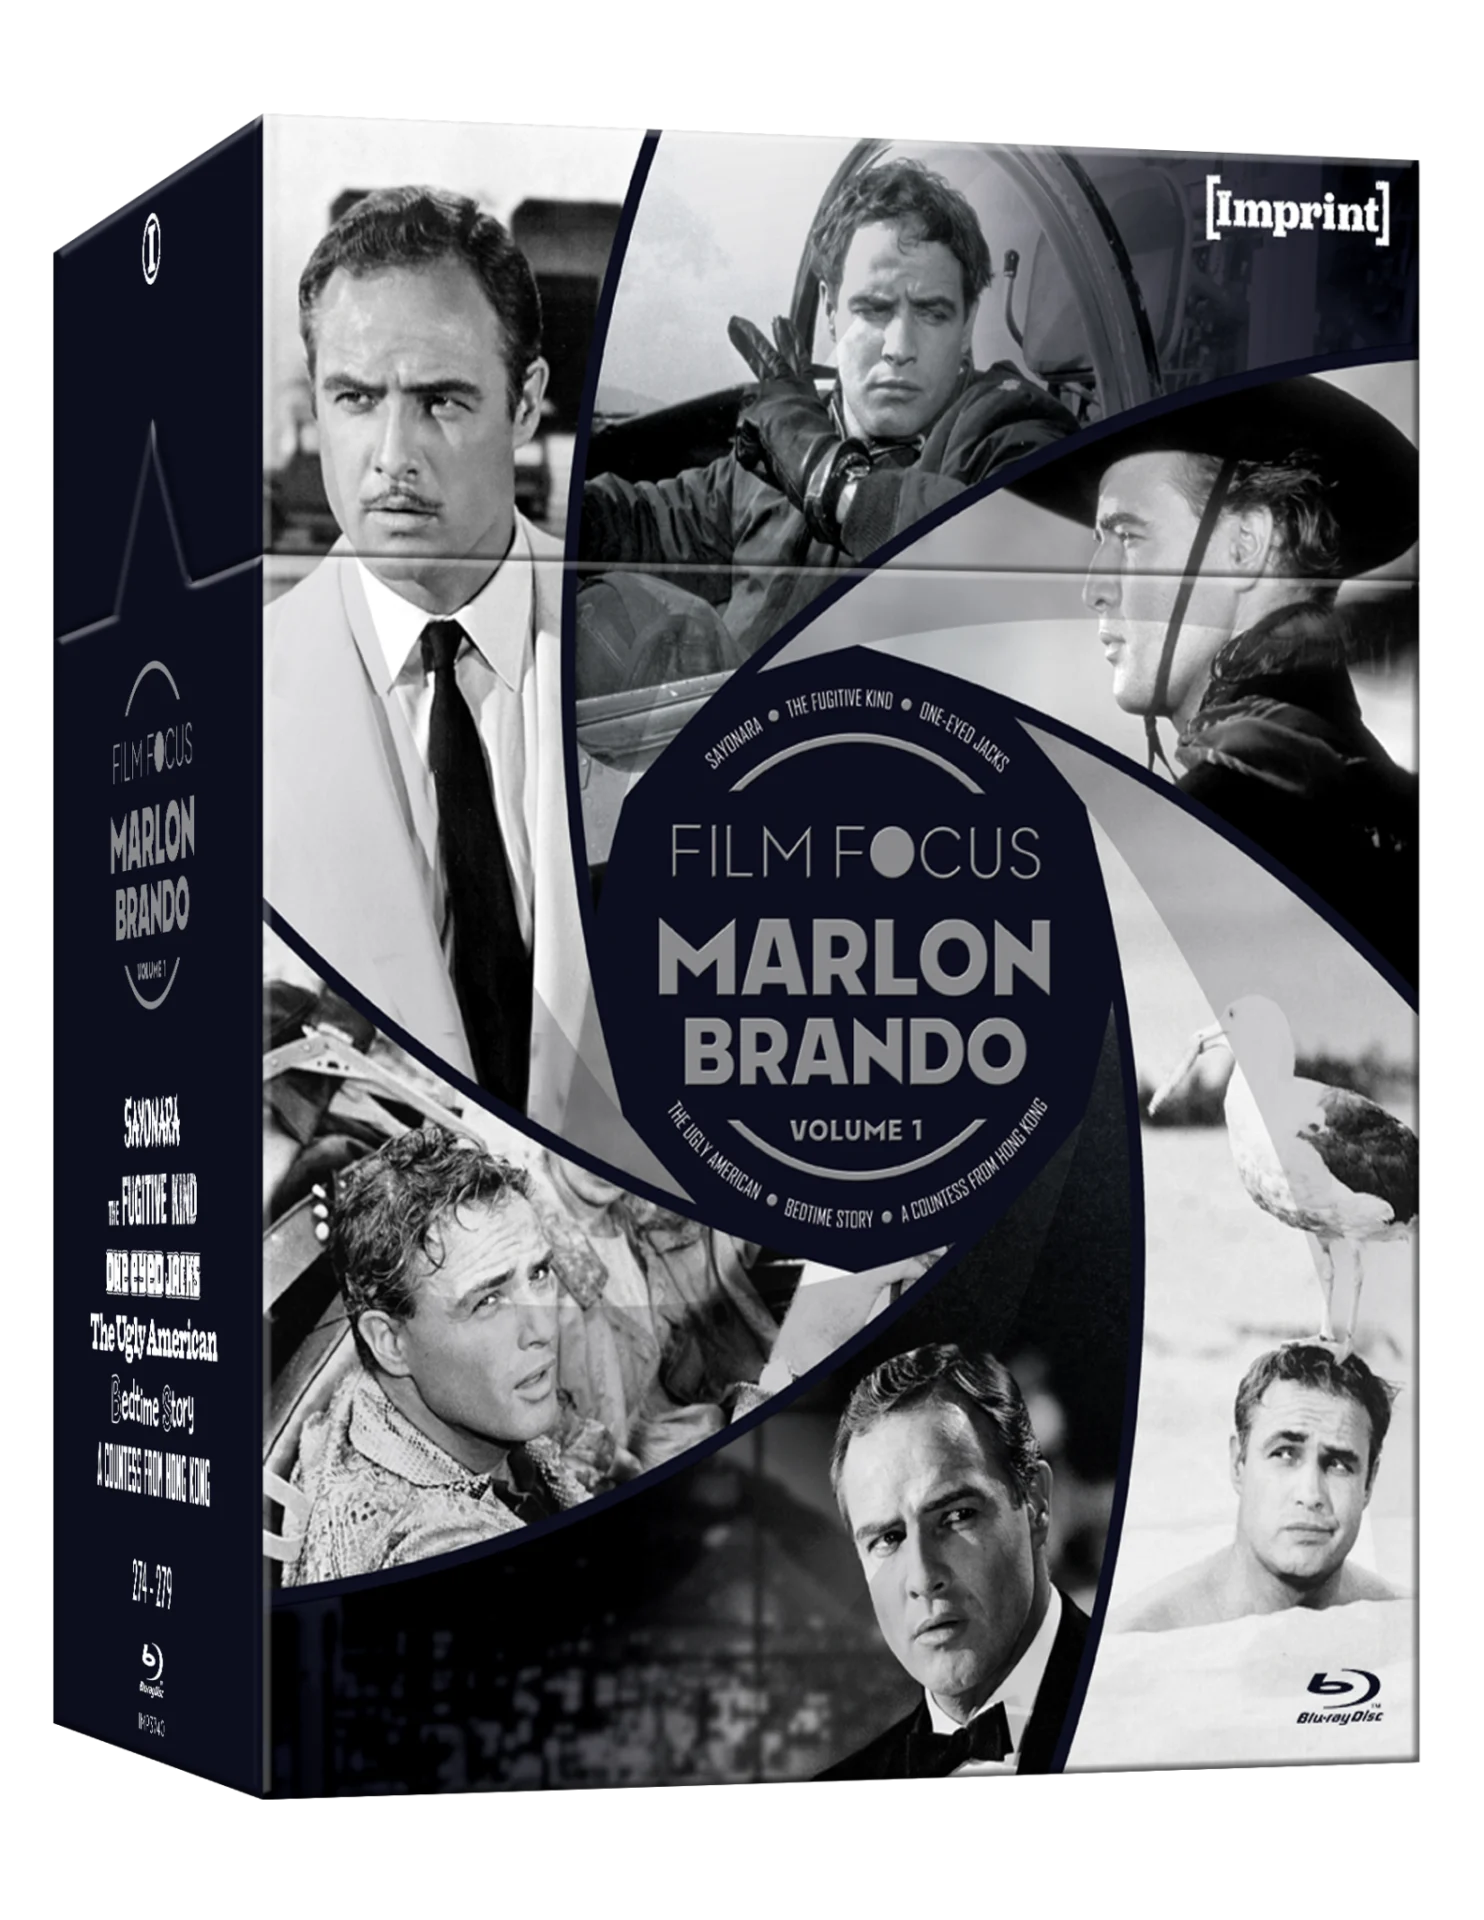 FILM FOCUS: MARLON BRANDO (REGION FREE IMPORT - LIMITED EDITION) BLU-RAY